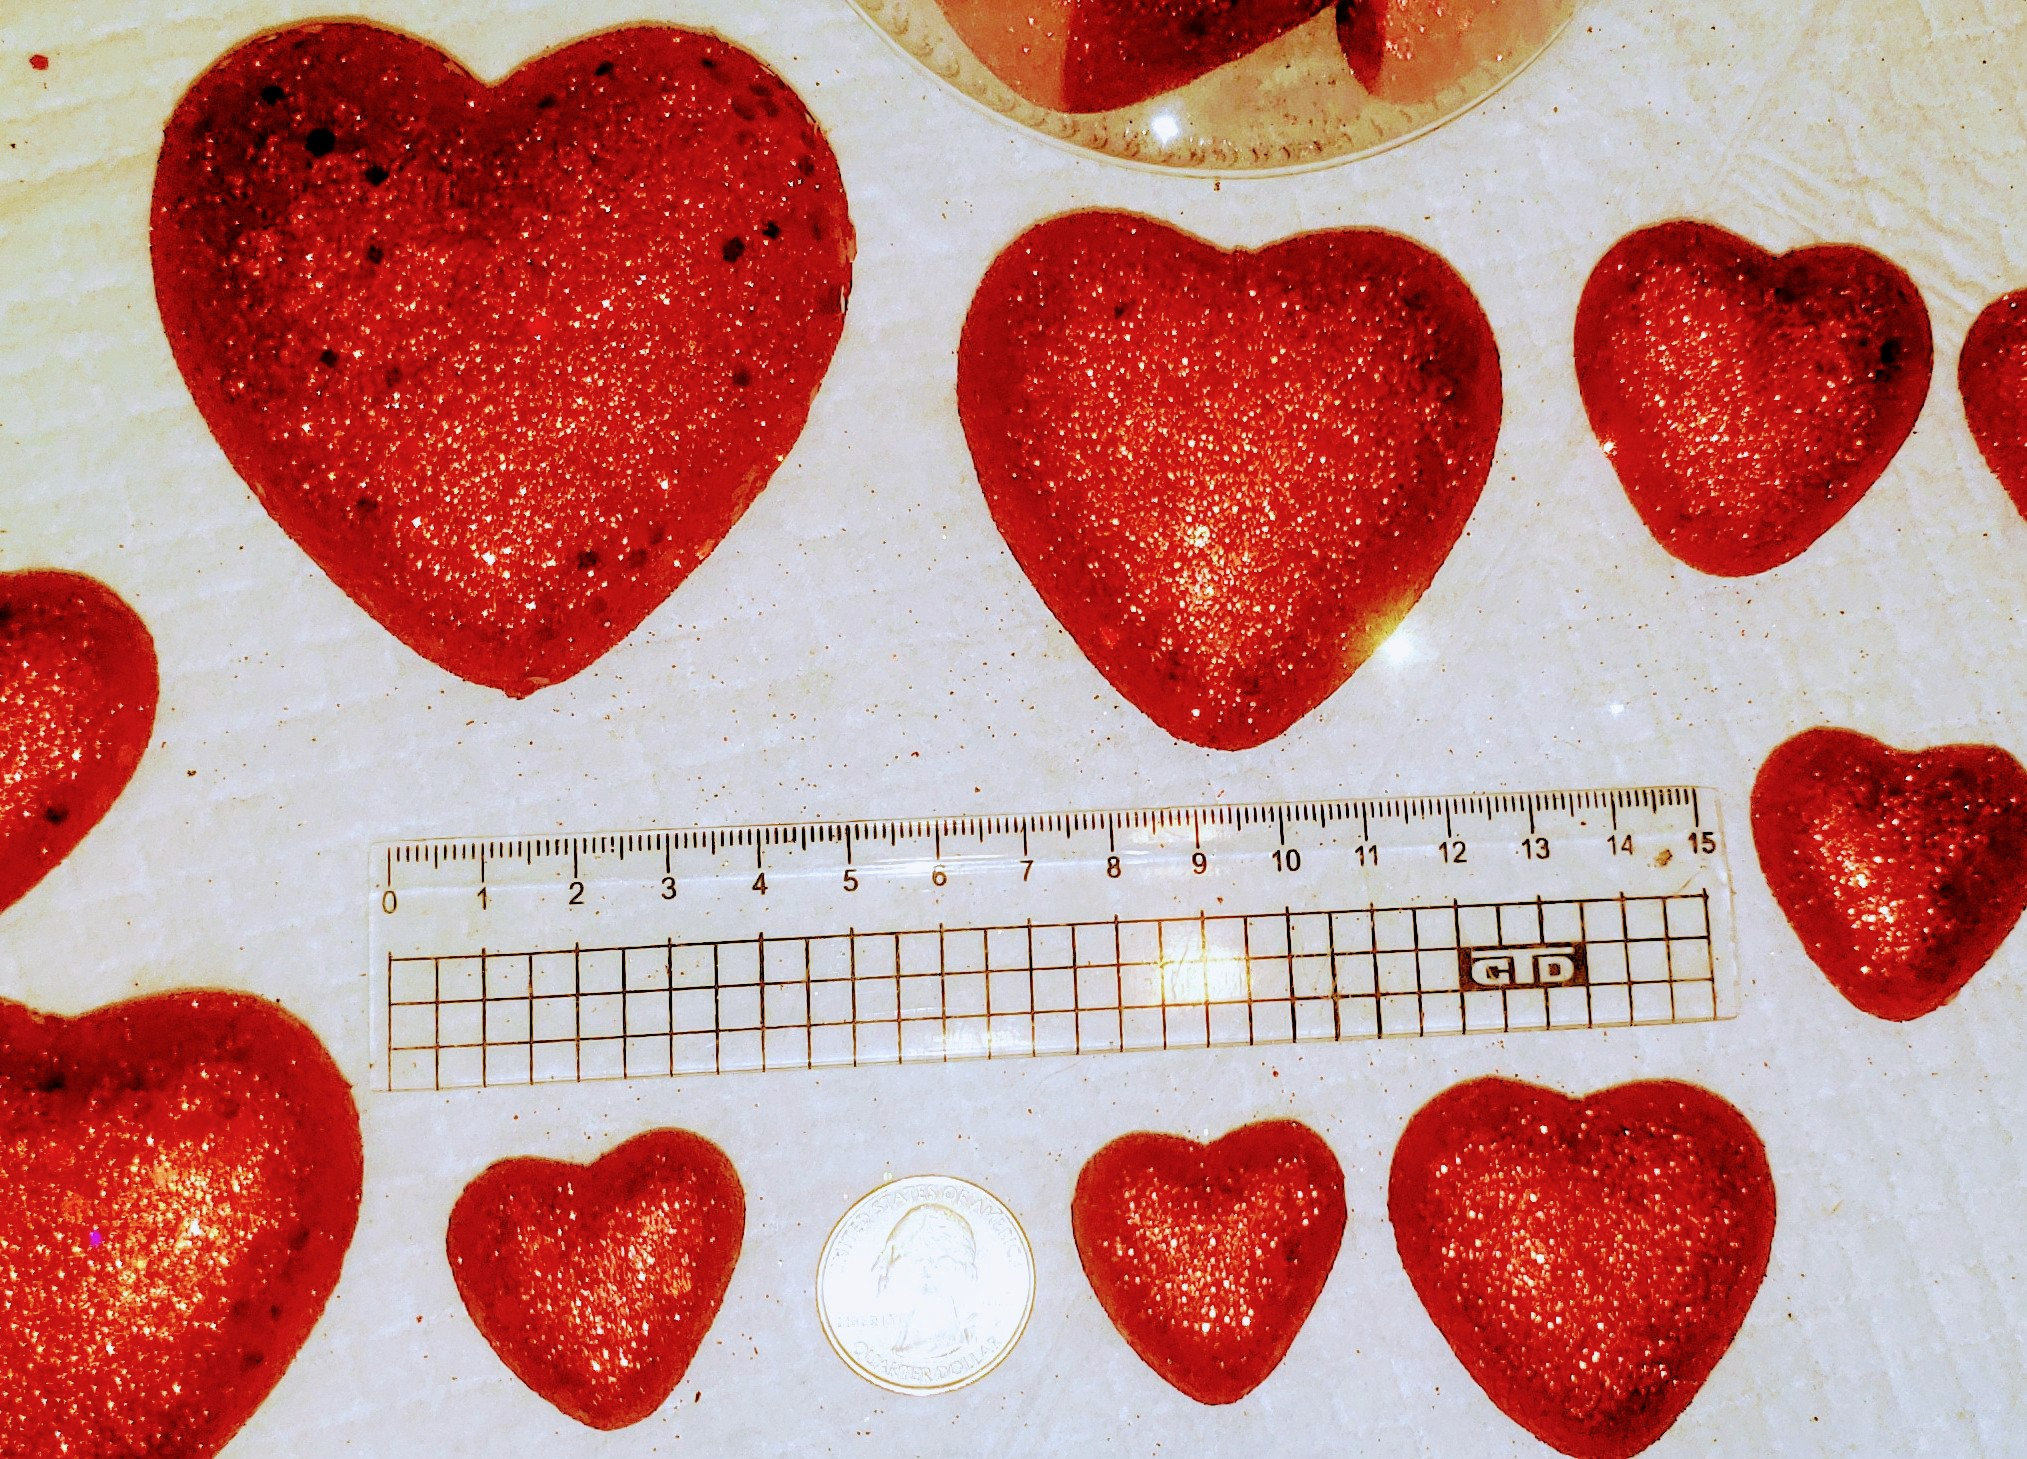 Polystyrene Heart 5cm - Αντωνιάδης – Κέντρο εκπαιδευτικού Υλικού και Ειδών  Χειροτεχνίας